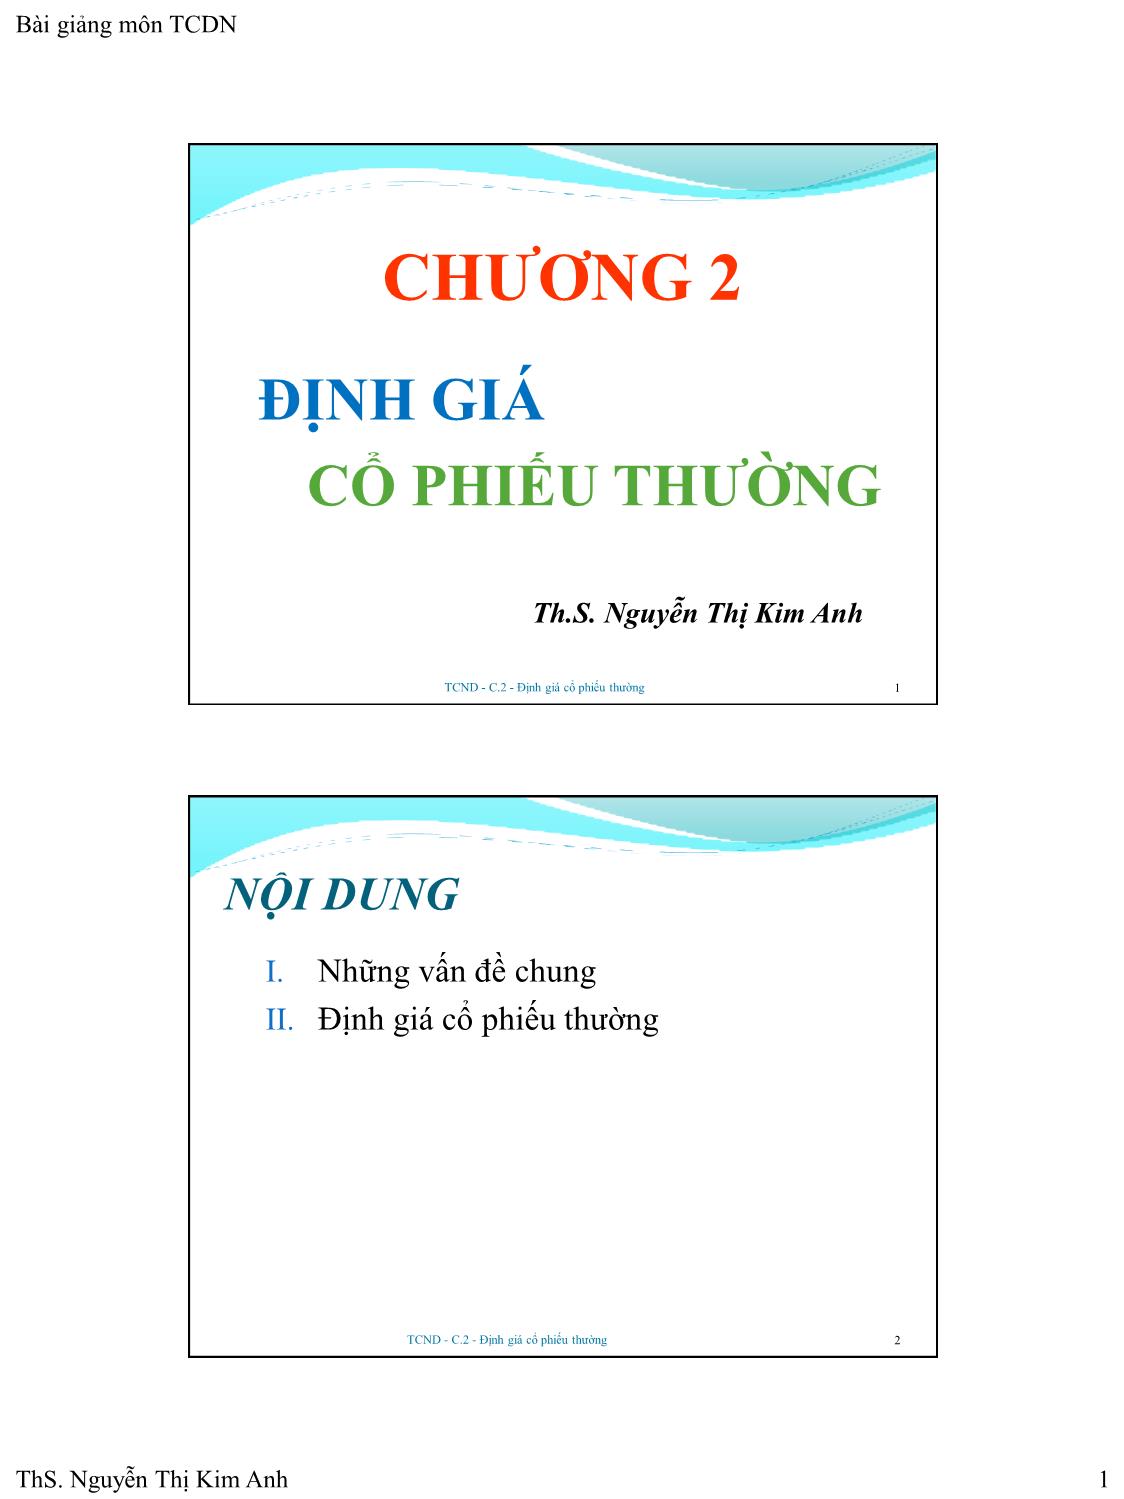 Bài giảng Tài chính doanh nghiệp - Chương 2: Định giá cổ phiếu thường - Nguyễn Thị Kim Anh trang 1